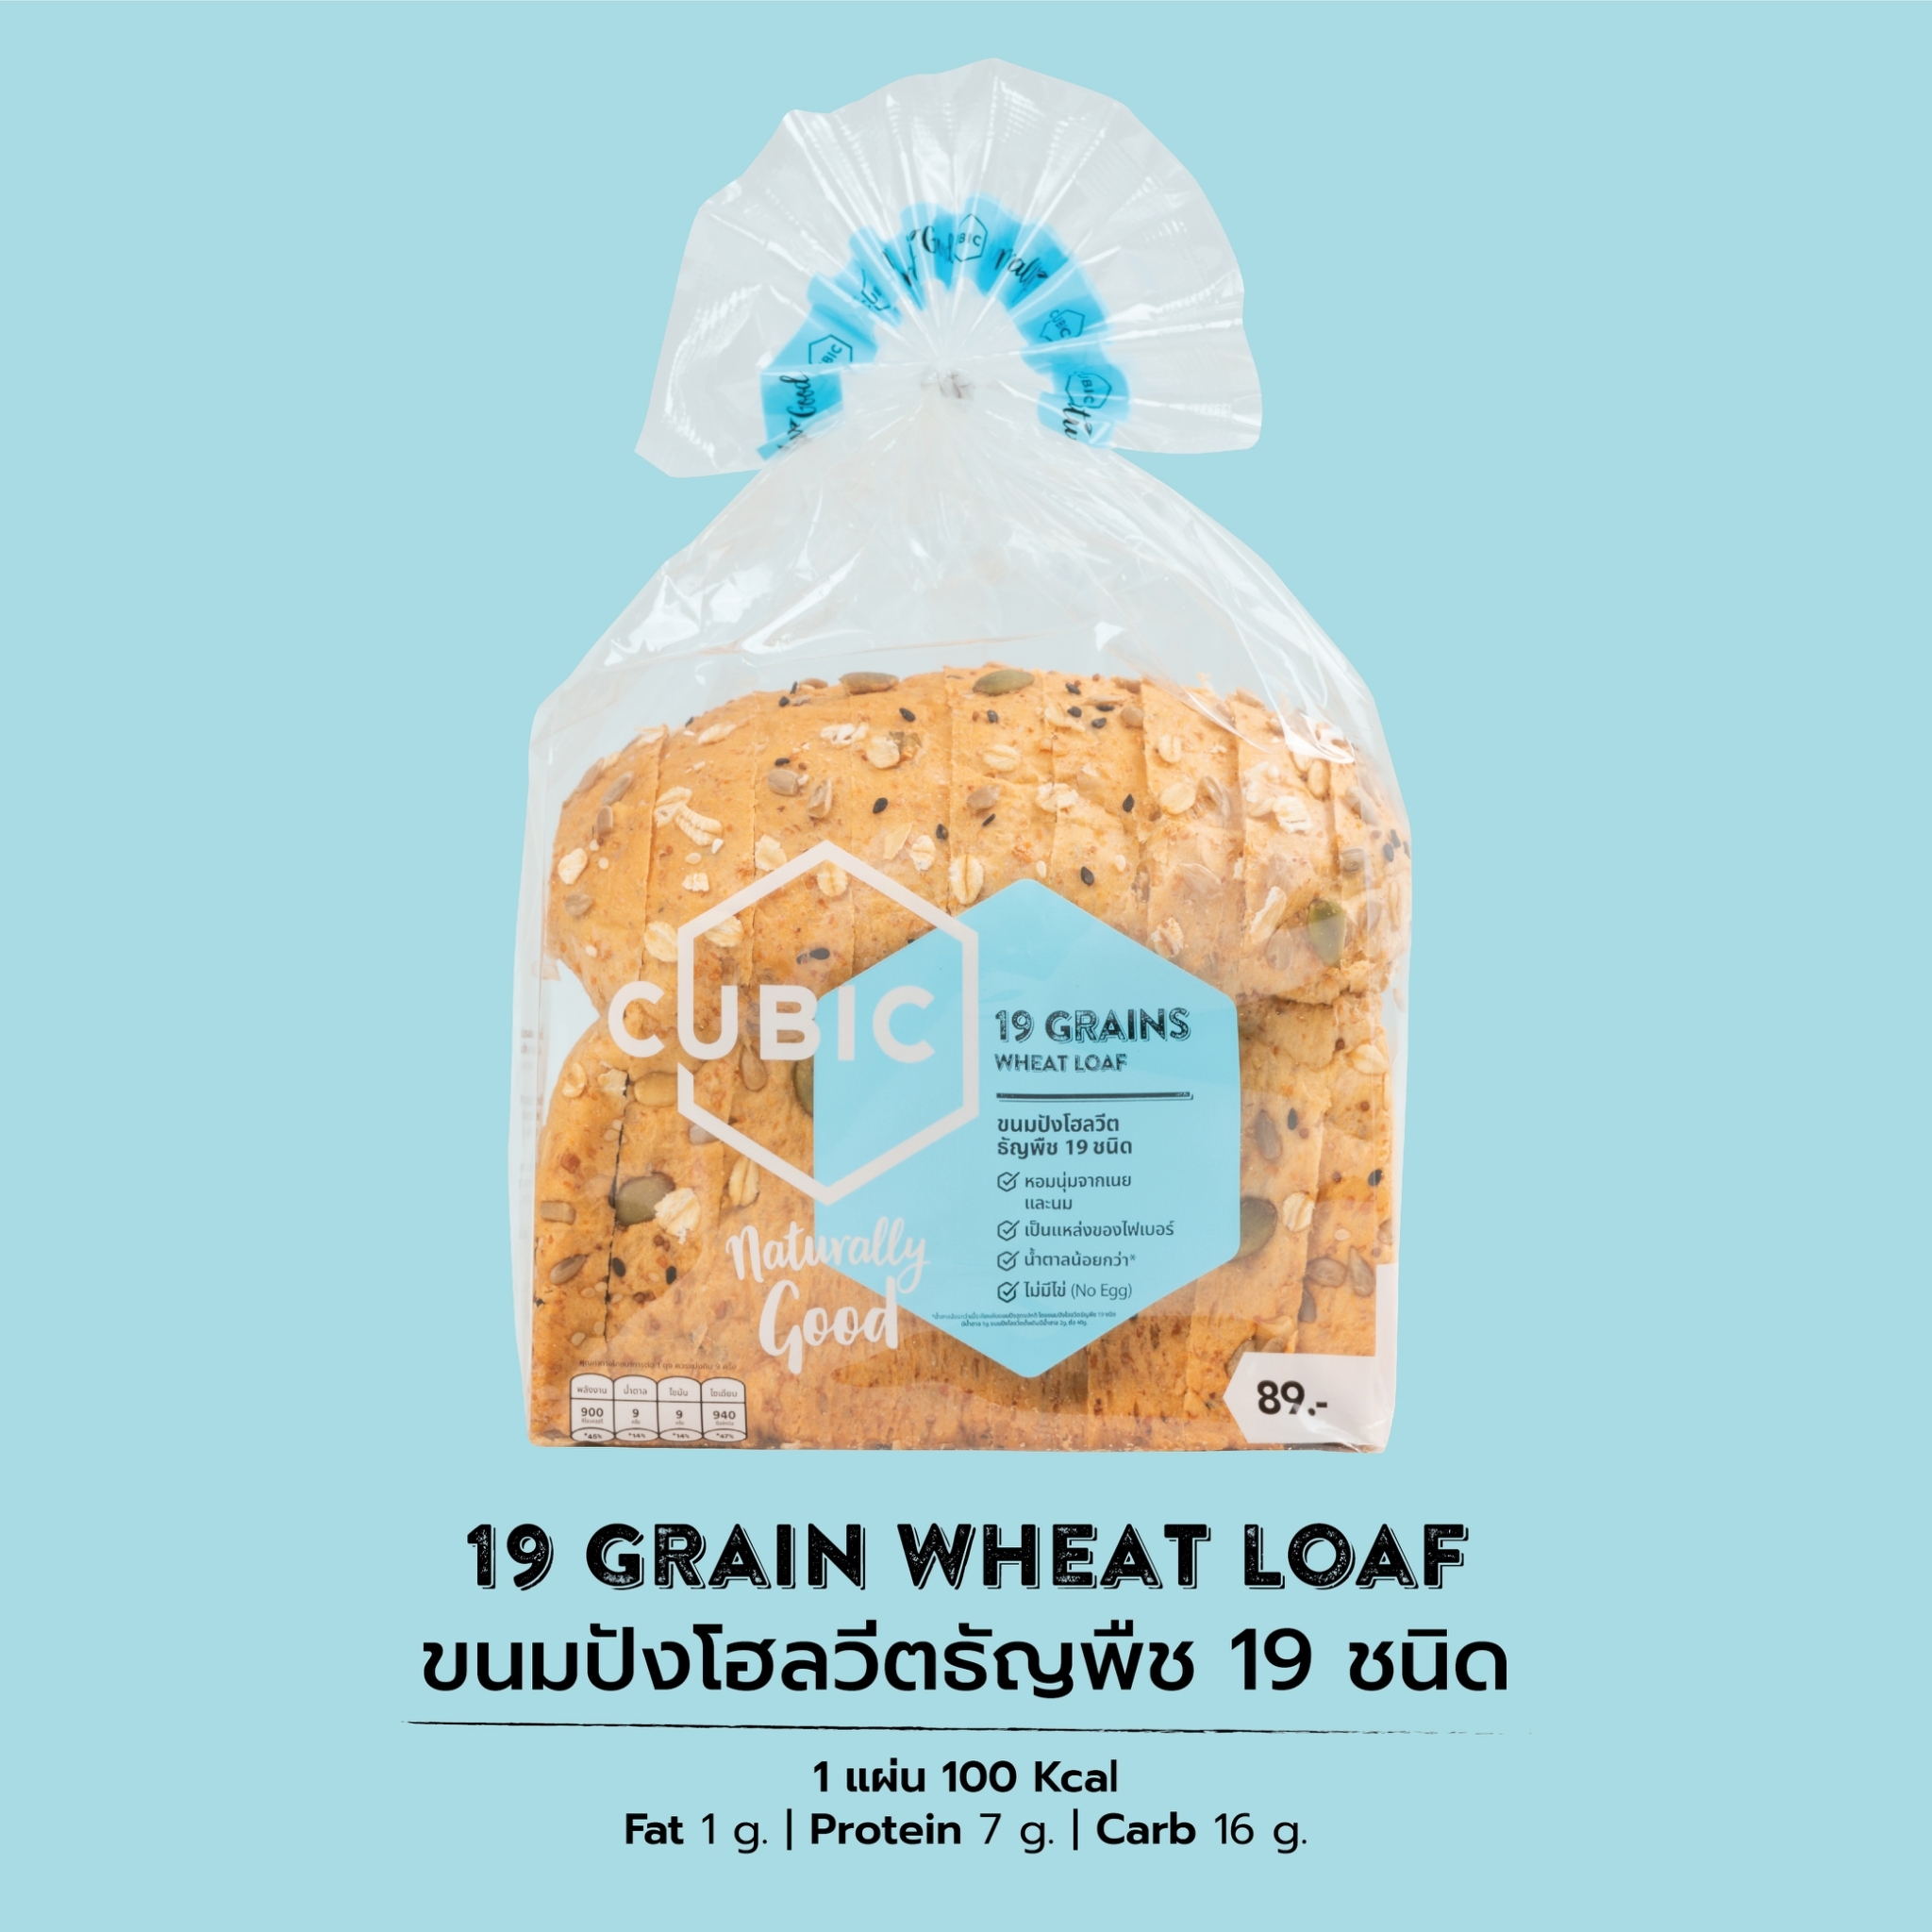 คิวบิกขนมปังโฮลวีตธัญพืช 19 ชนิด Cubic 19 Grains Wheat Loaf 360g. (Pre-order 5-7 วัน)